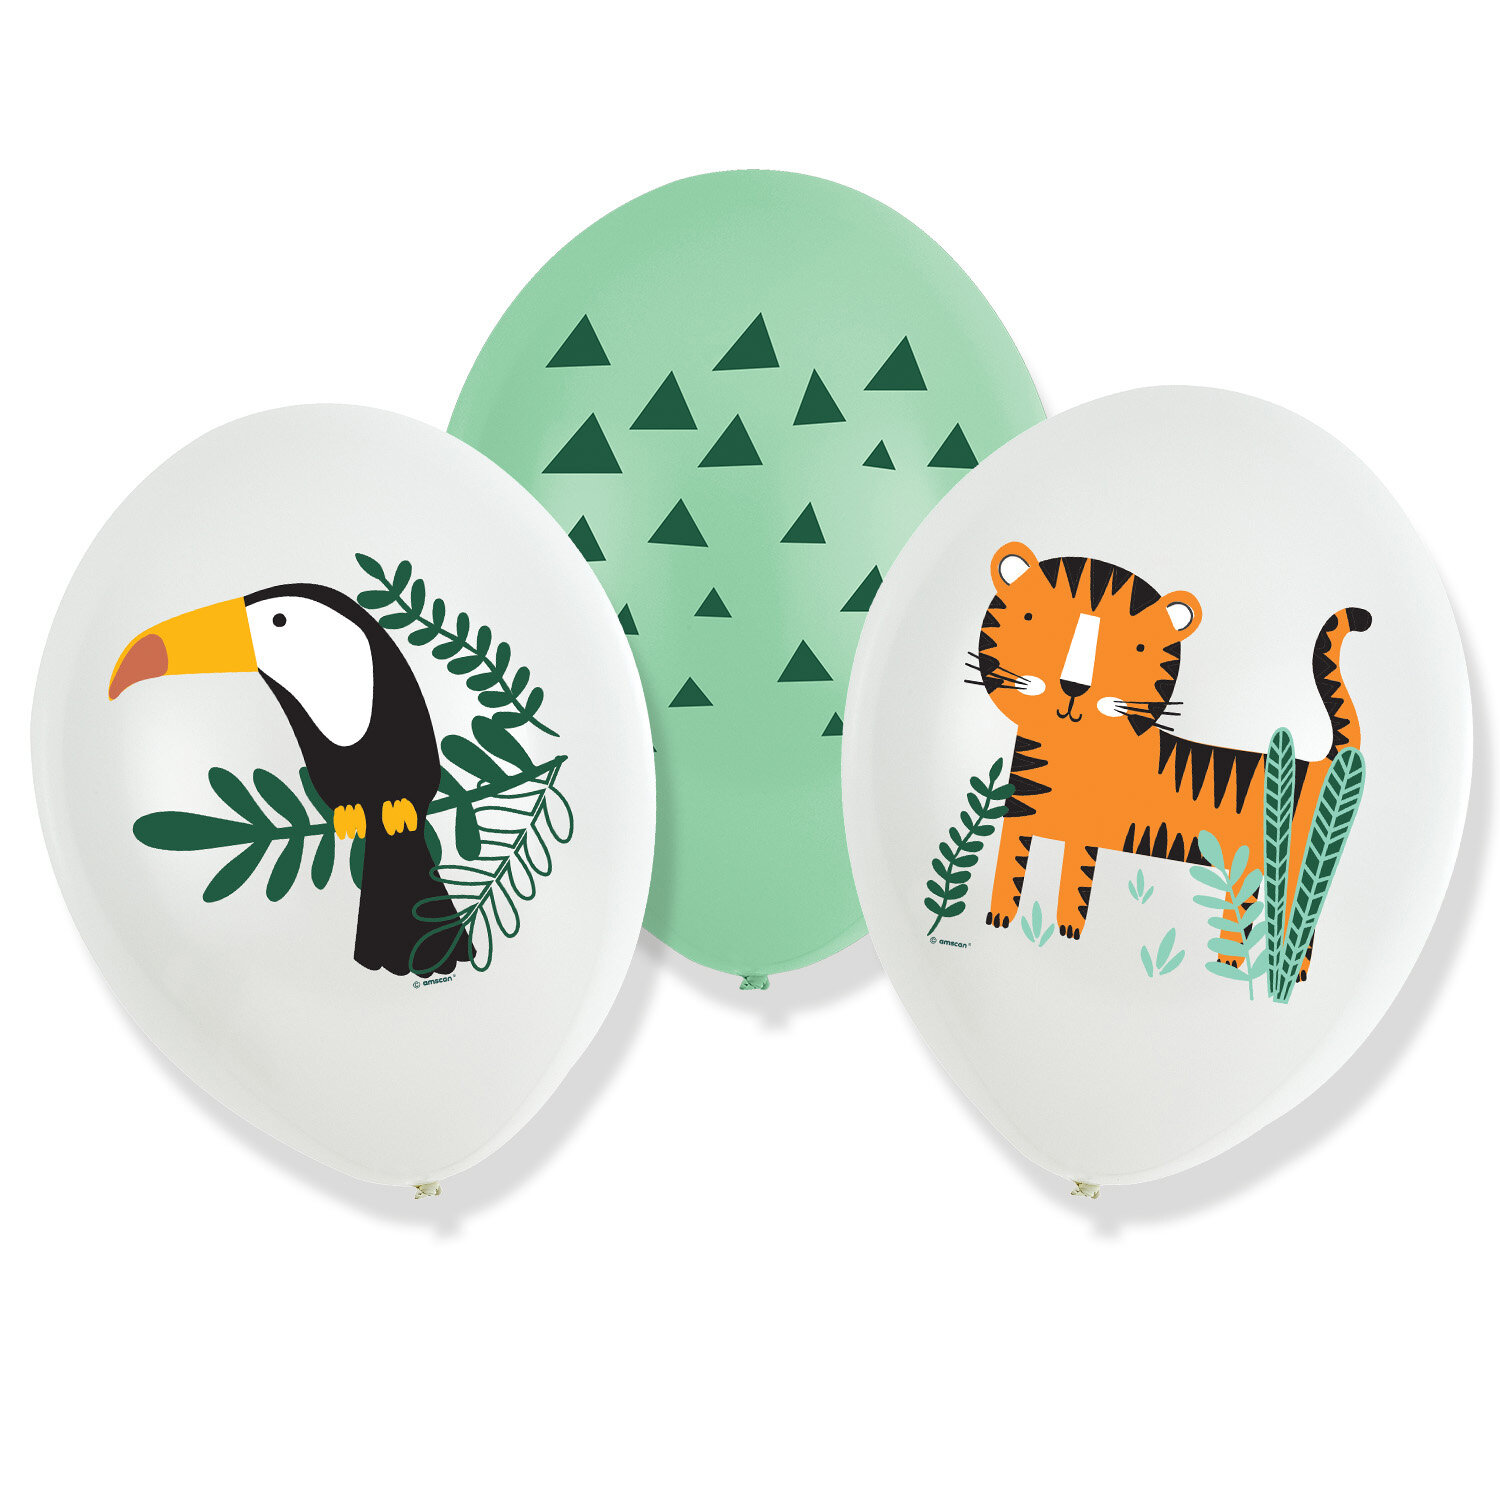 Safaridjur - Ballonger 6-pack